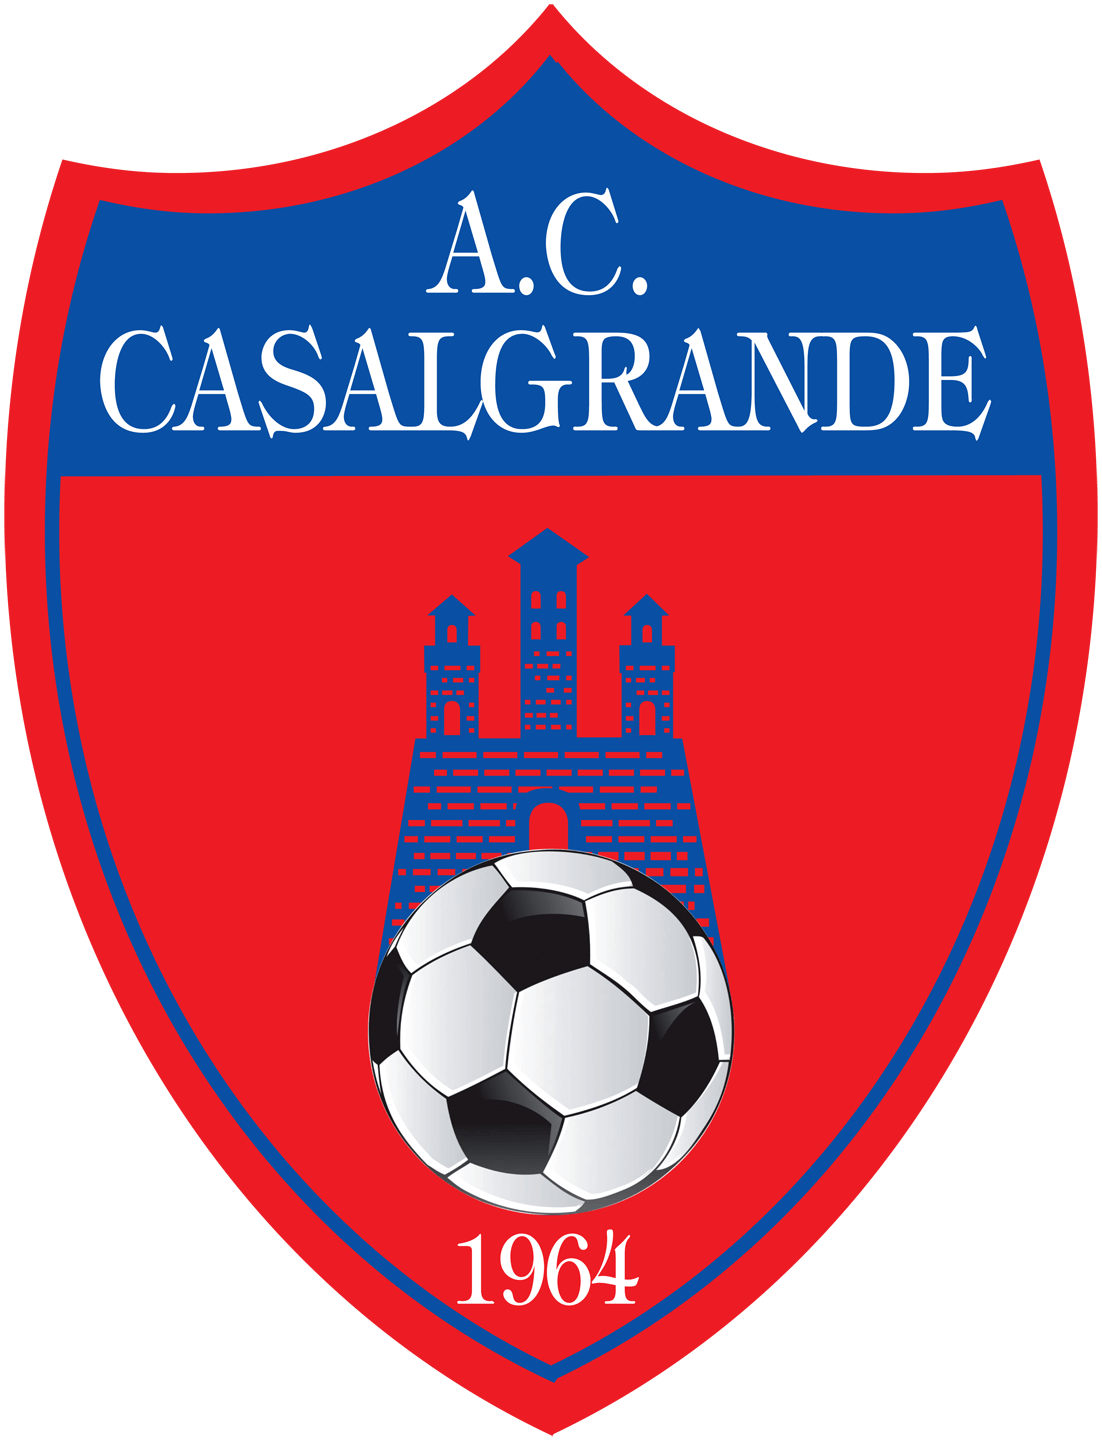 A.C. CASALGRANDE